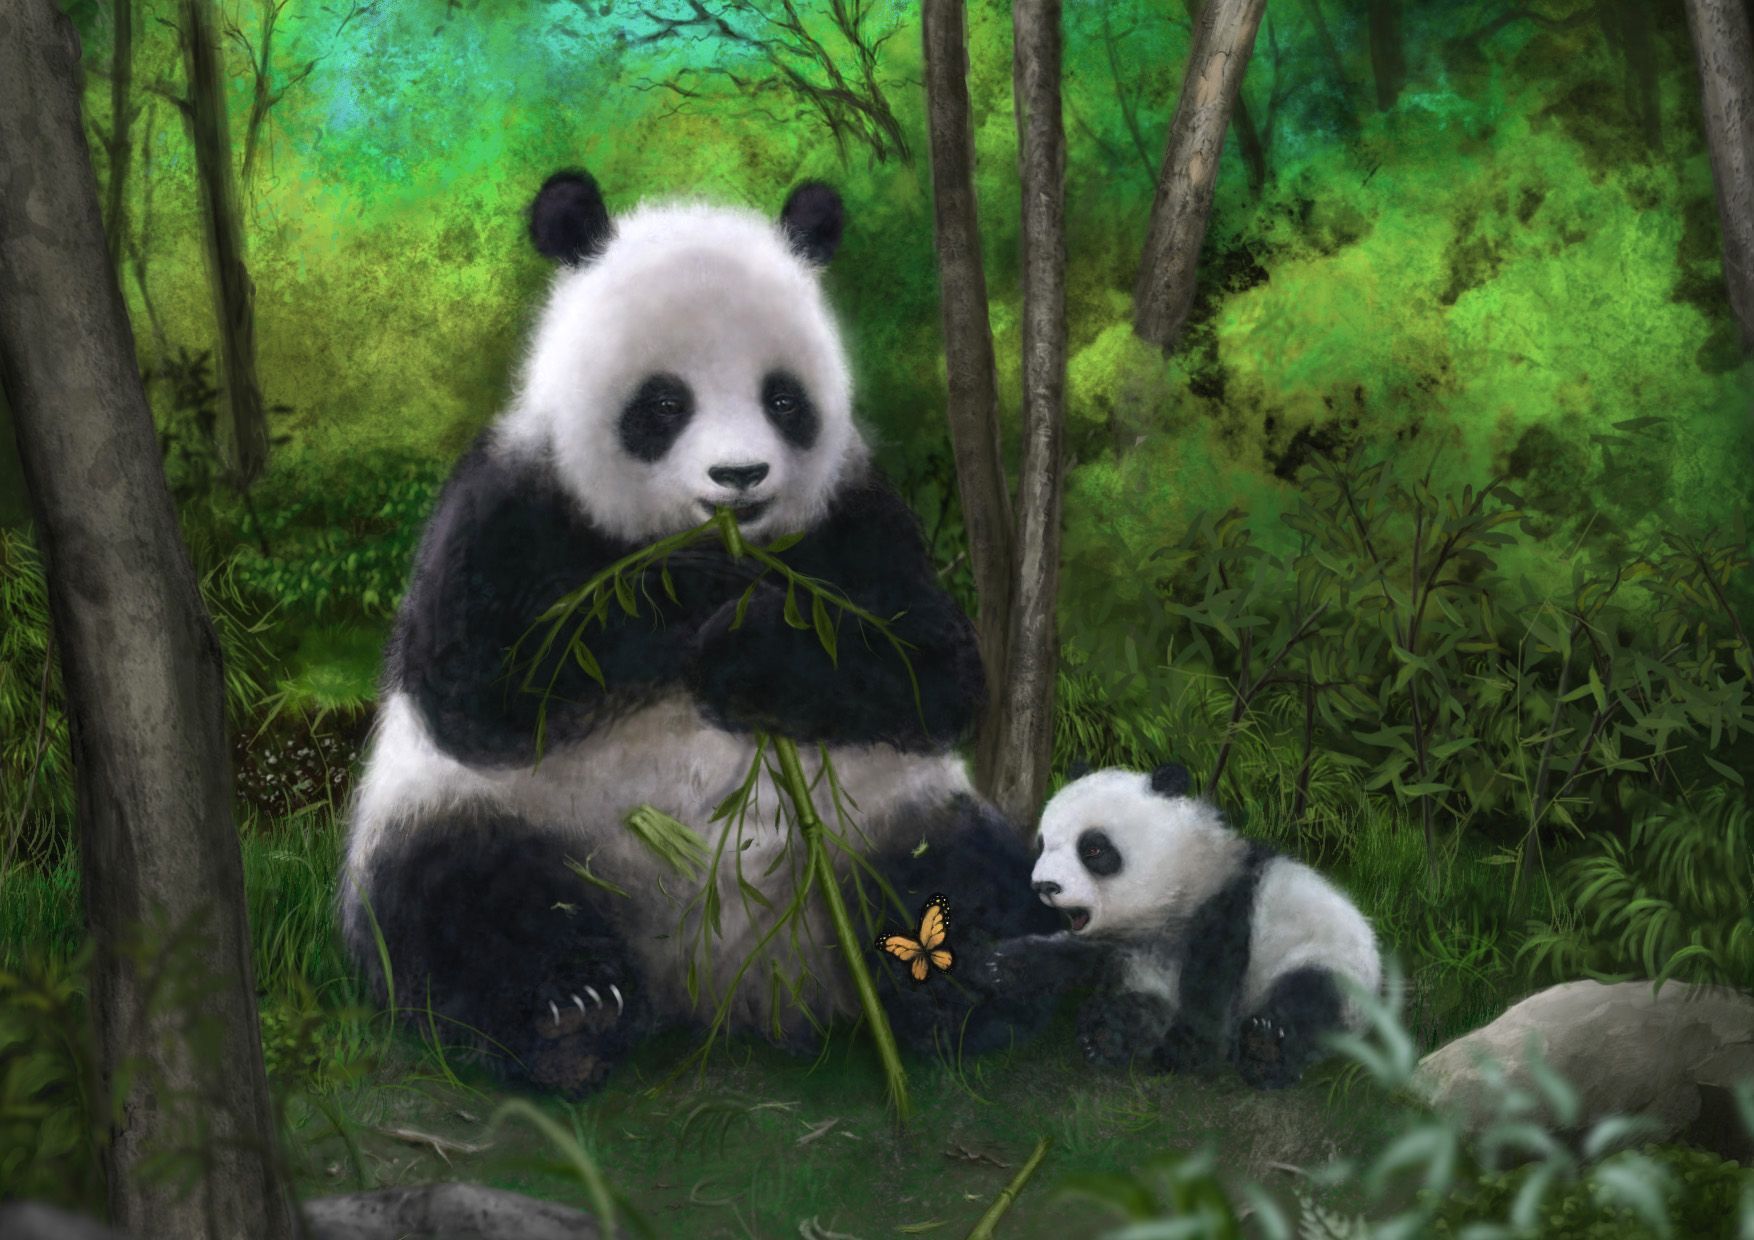 Animals illustrations panda bears wallpaper - - High resolution